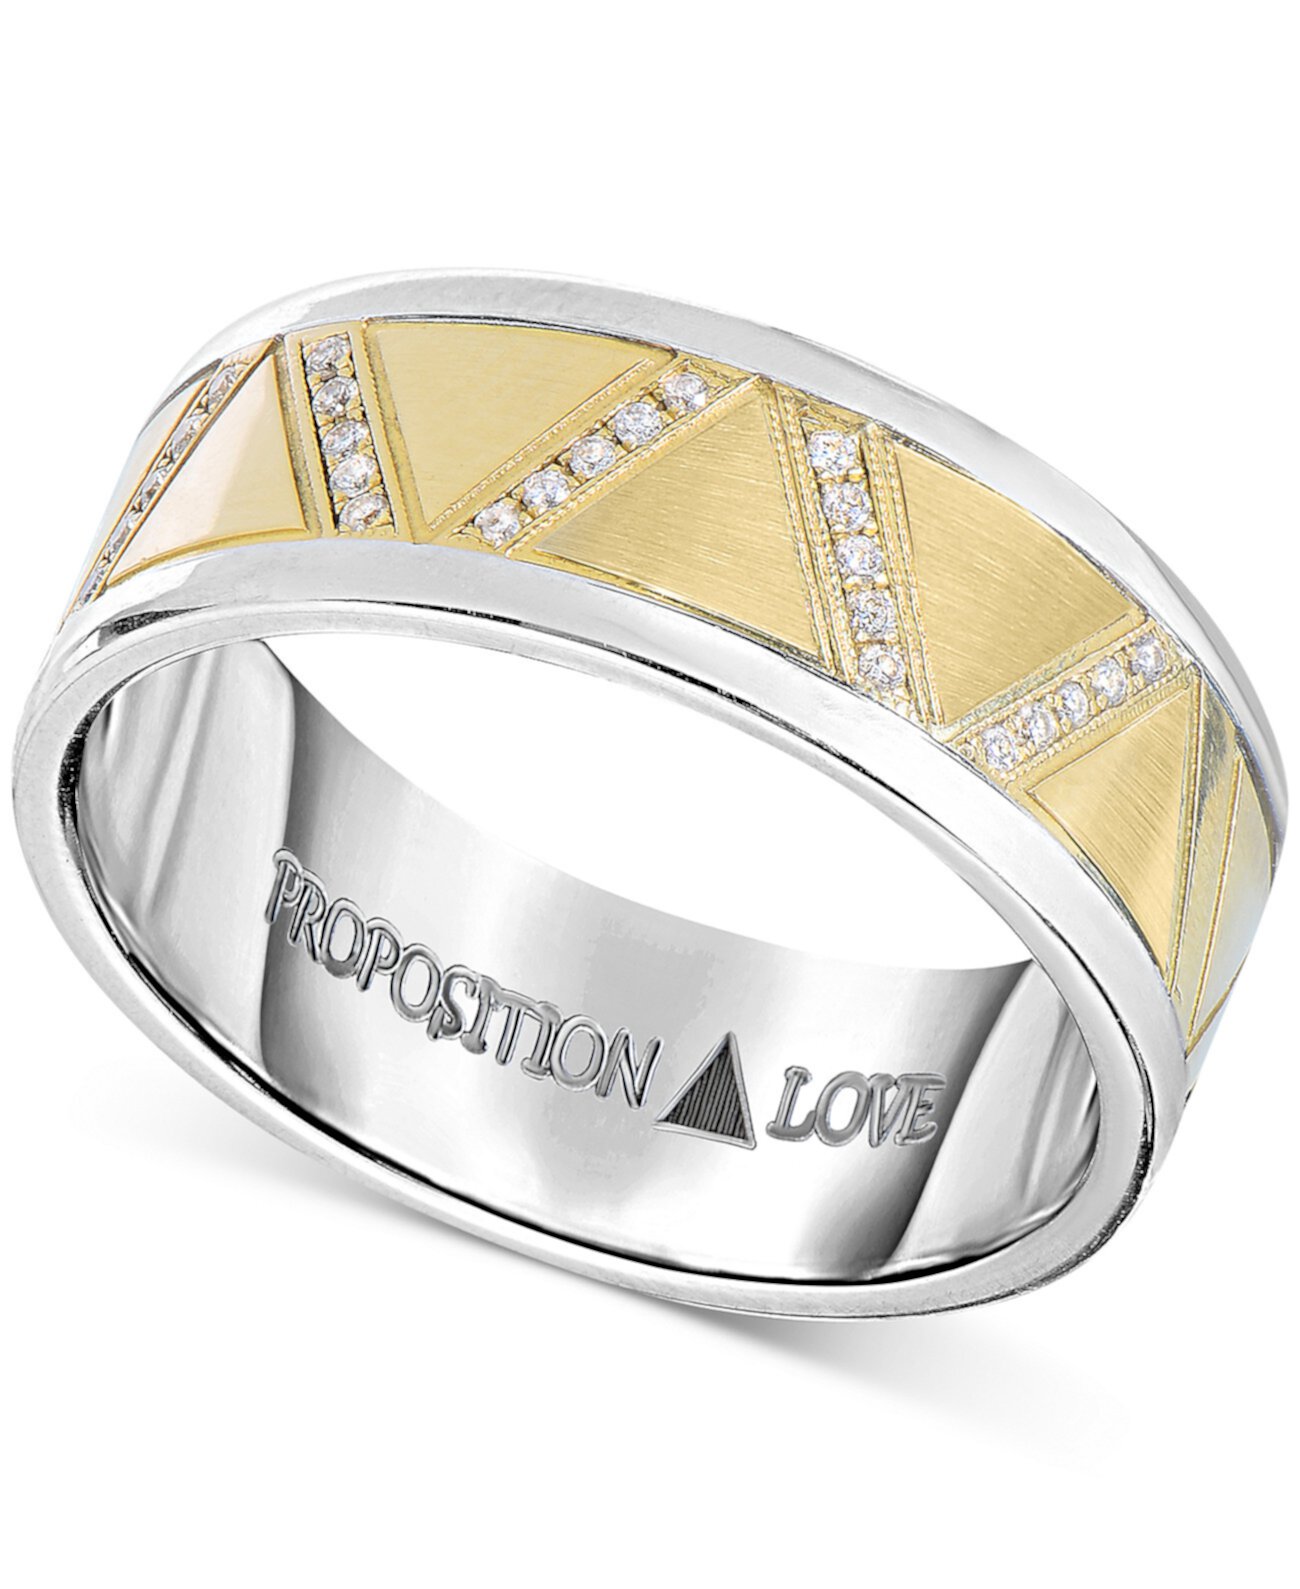 Мужское обручальное кольцо с бриллиантами (1-1 / 10 карата) из желтого золота 14 карат и кобальта Proposition Love